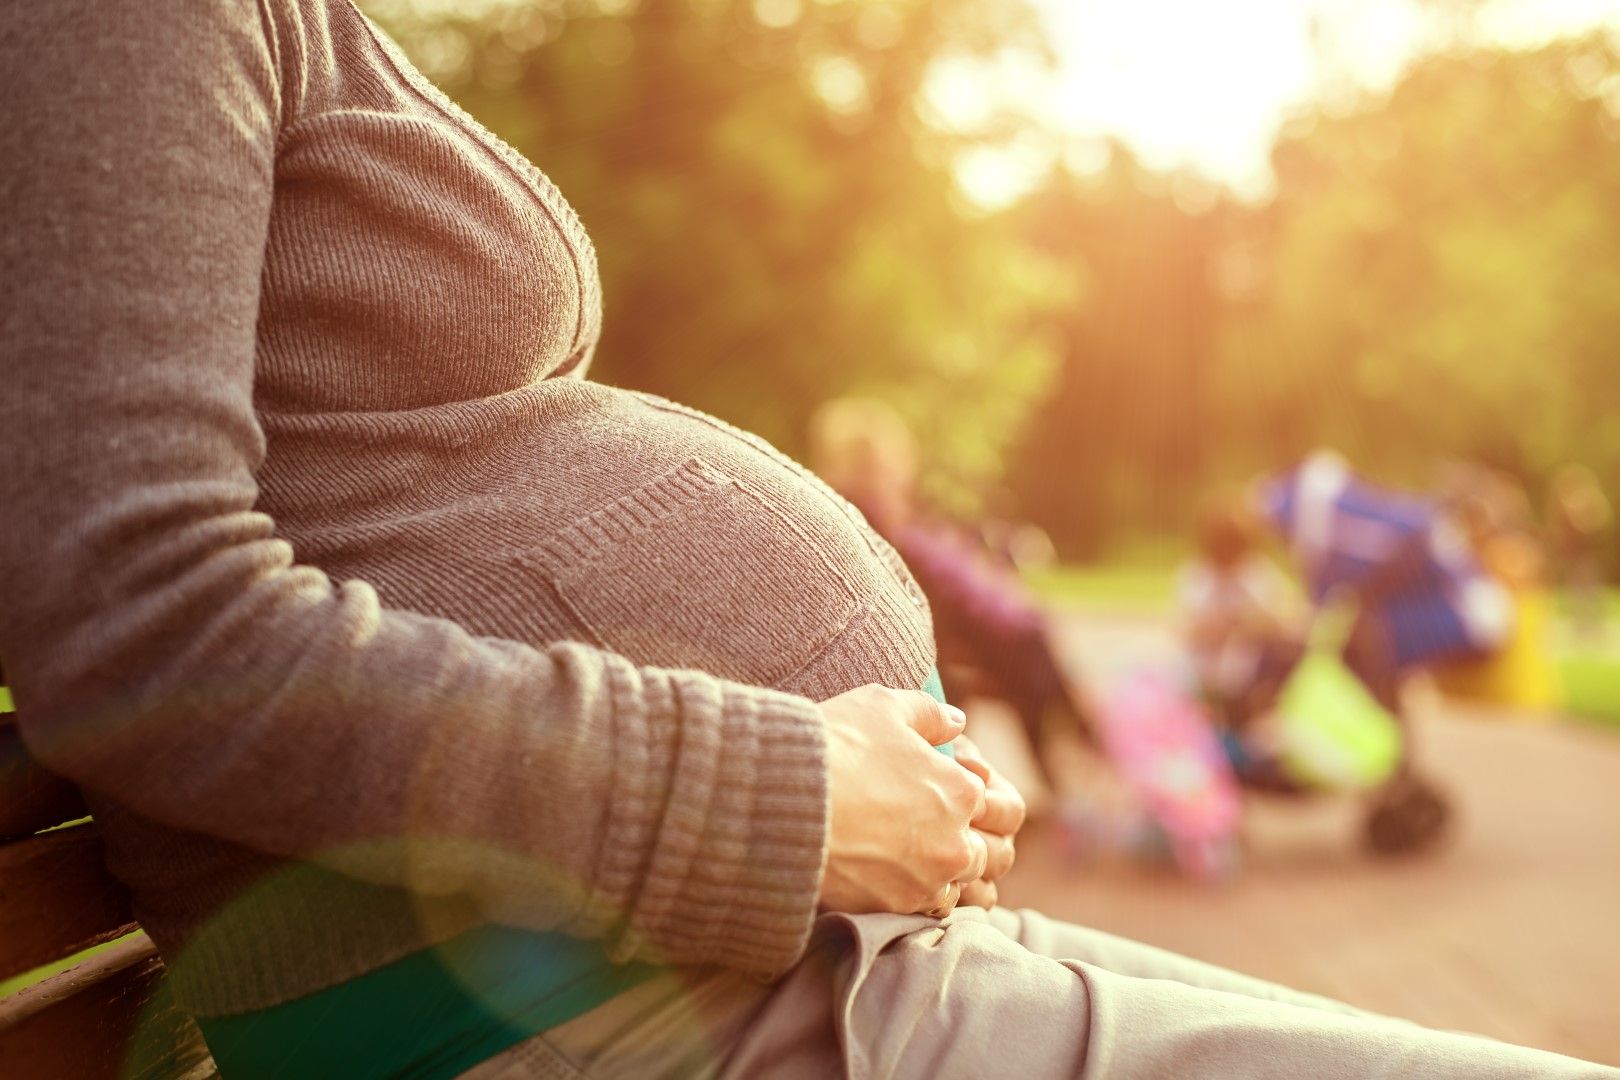 Запазва се периодът на изплащане на паричното обезщетение за бременност и раждане - 410 дни 